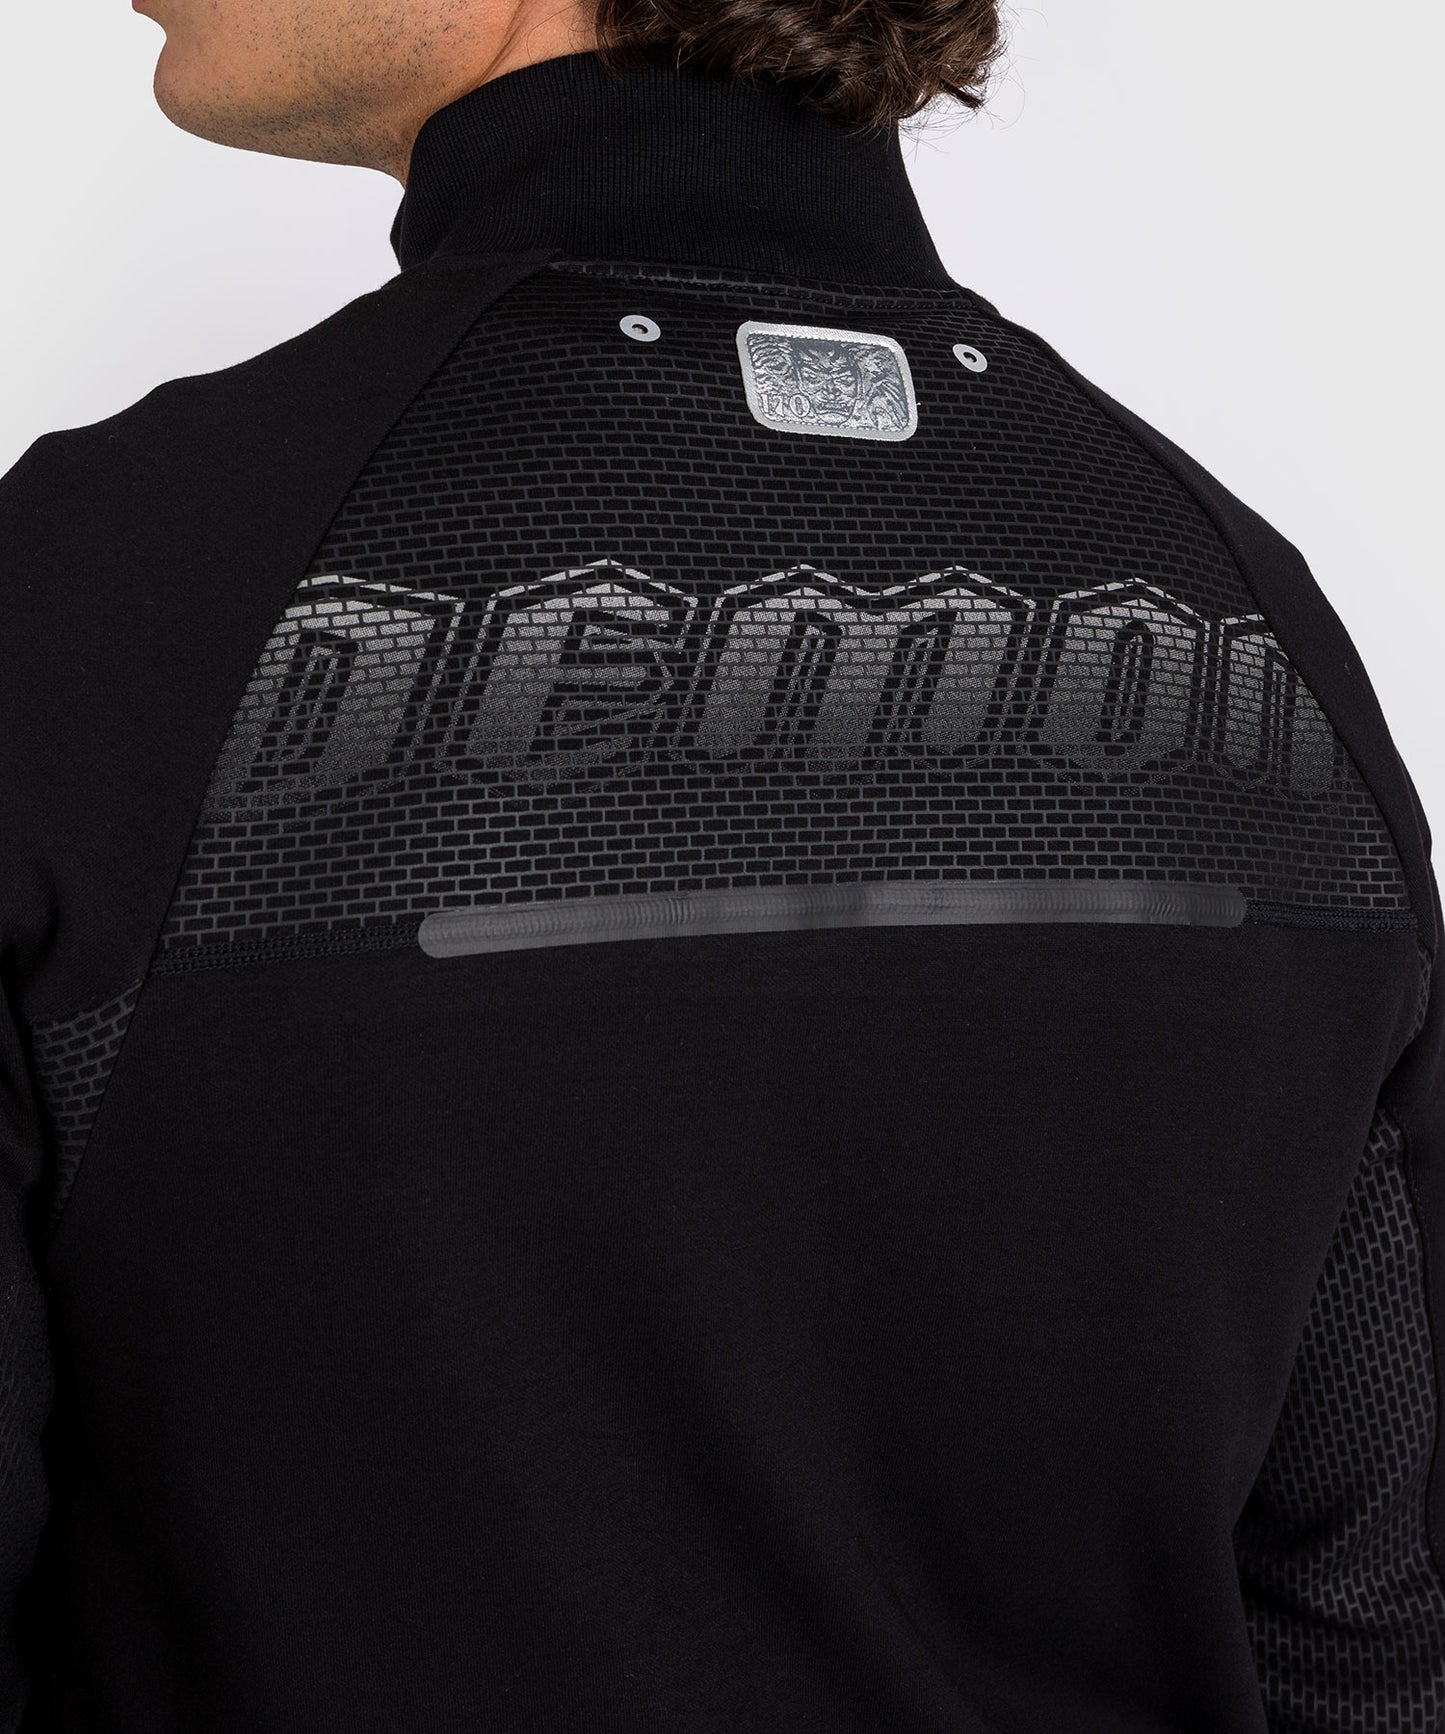 Venum x Dodge Demon 170  Men’s Full-Zip Jacket - Black